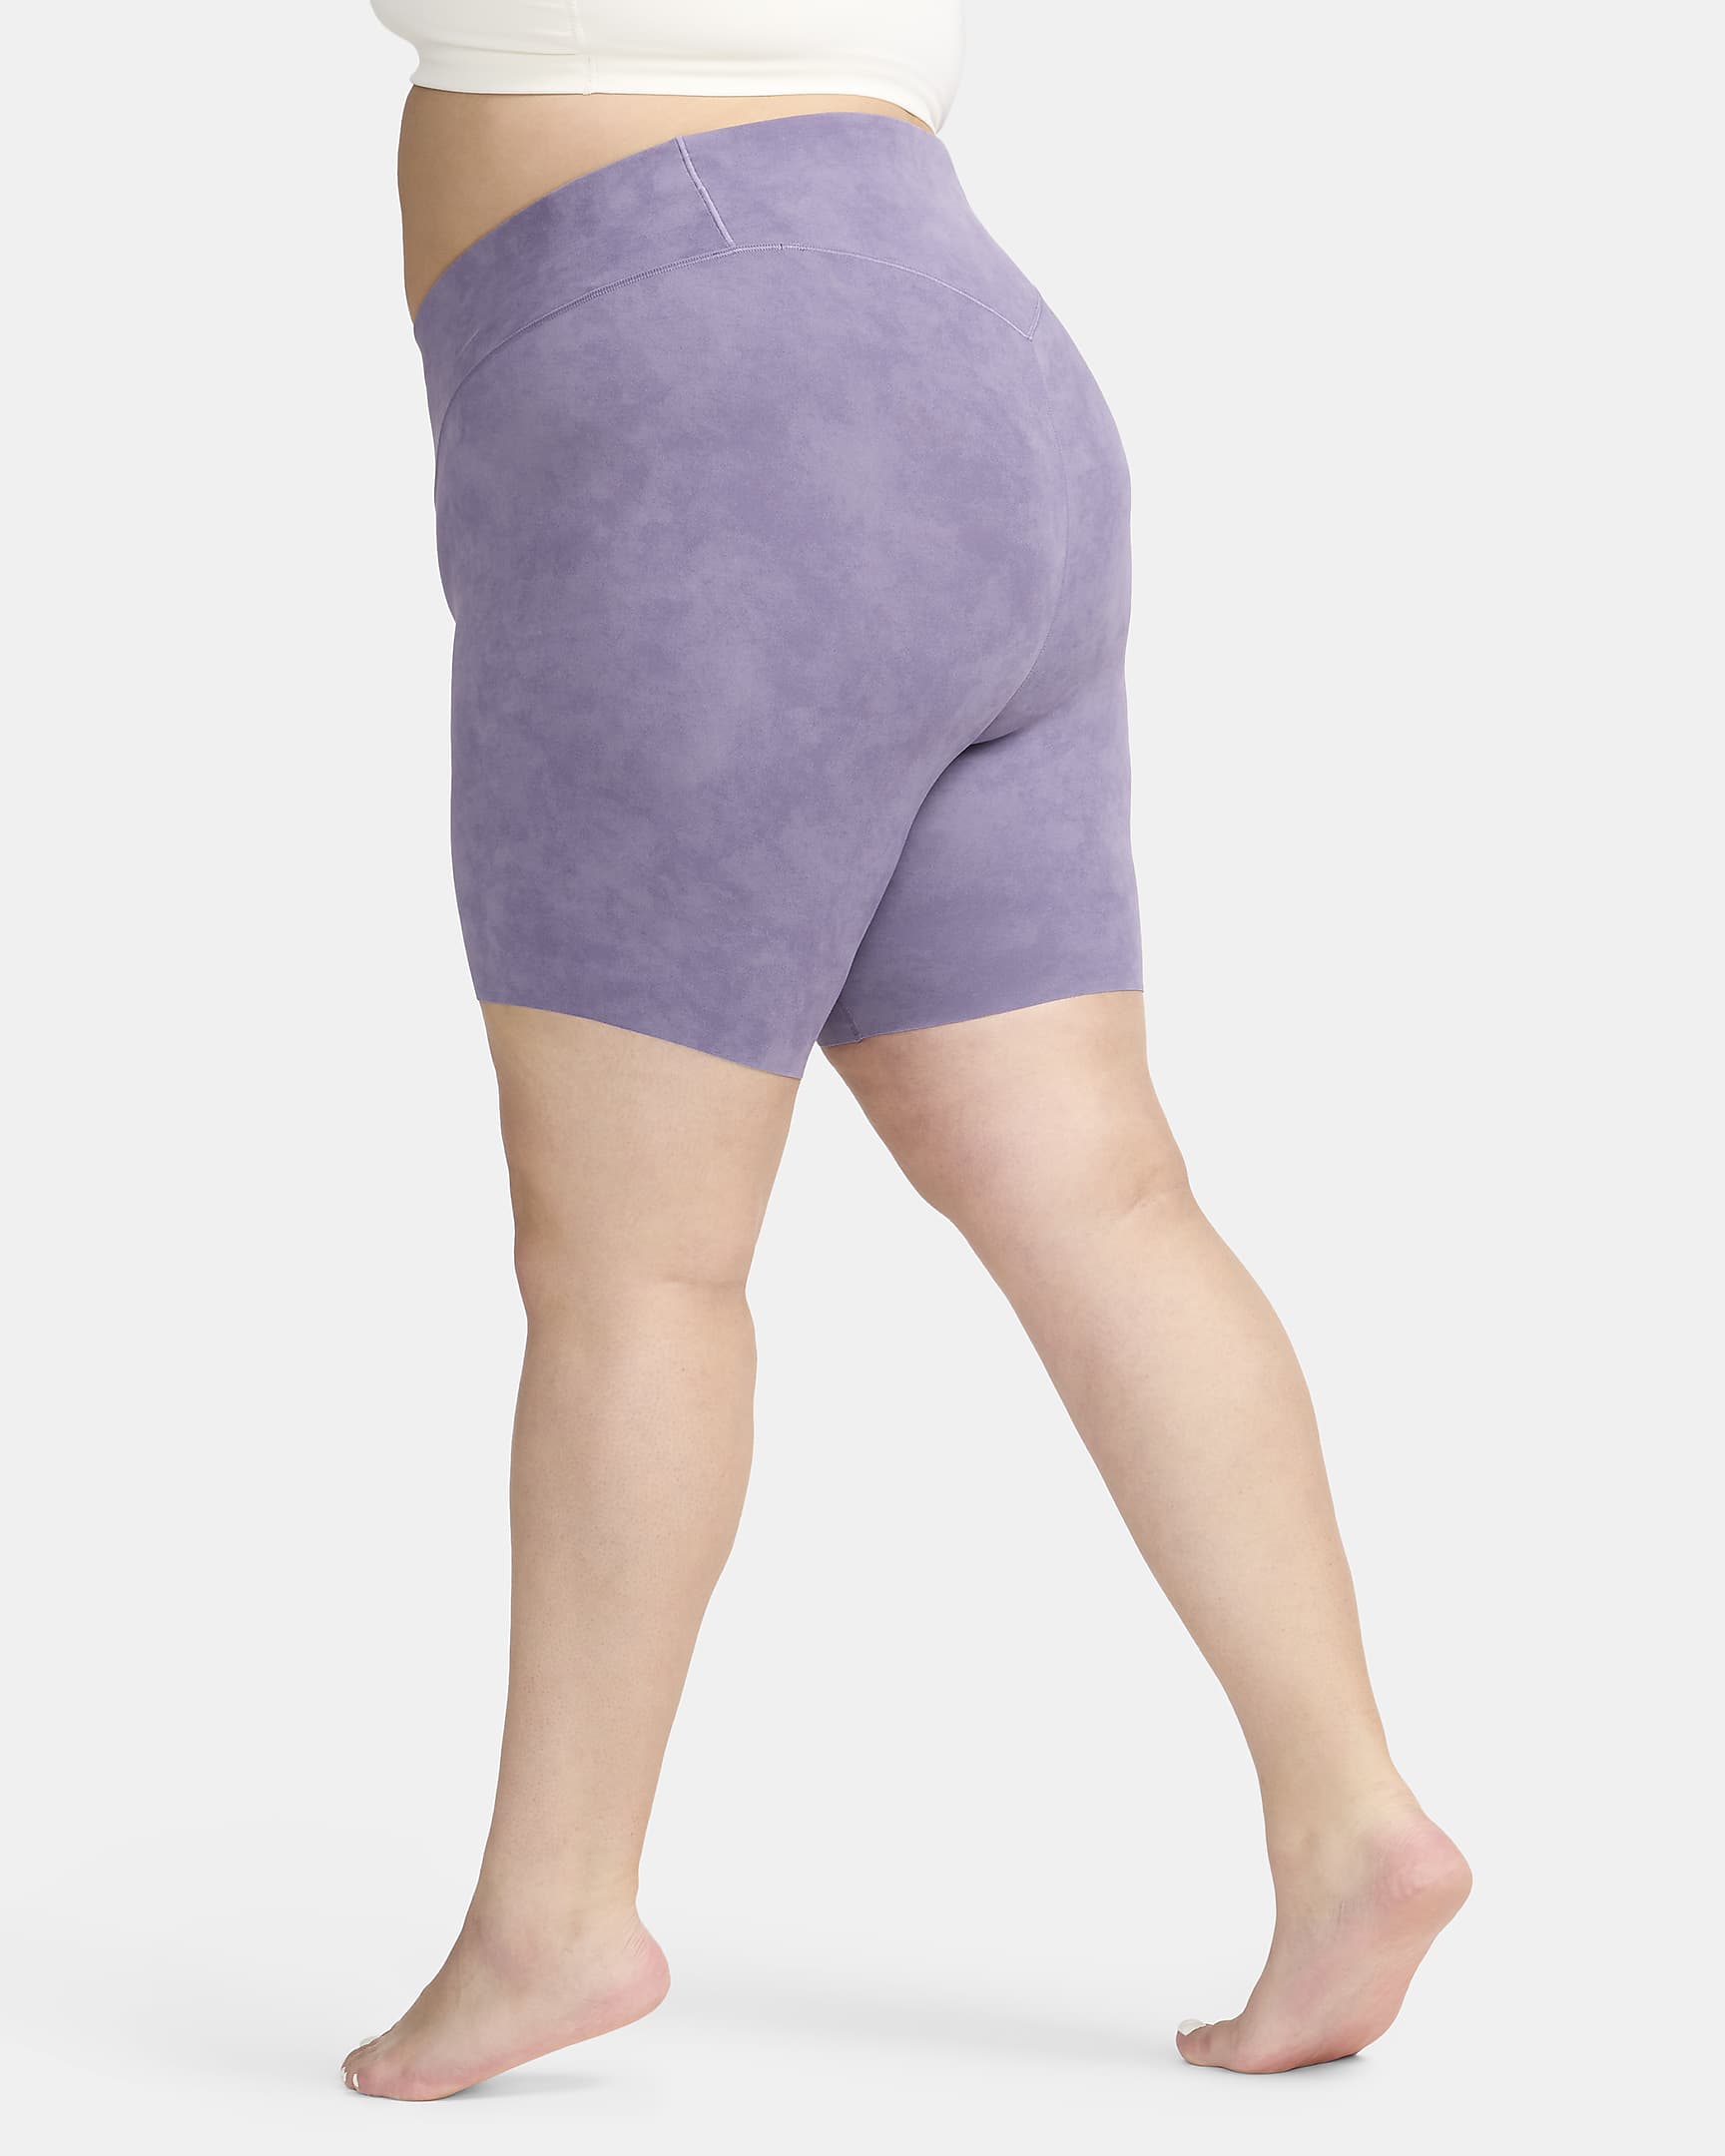 Nike Zenvy Tie-Dye Women's Gentle-Support High-Waisted 20cm (approx.) Biker Shorts (Plus Size) - Daybreak/Black